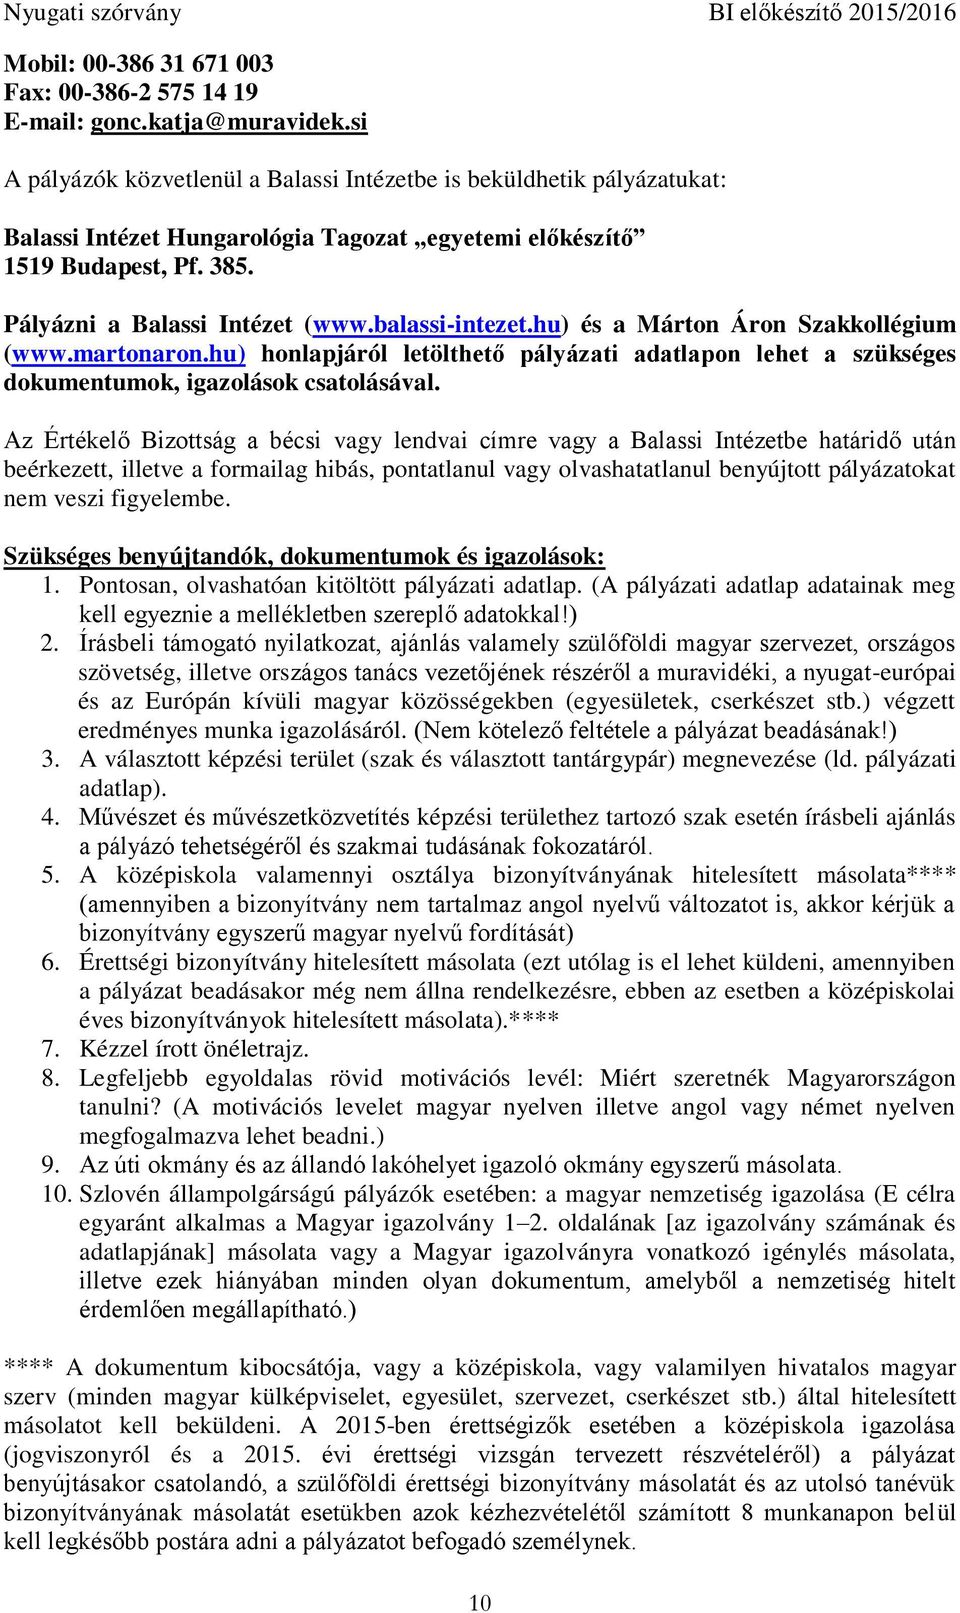 balassi-intezet.hu) és a Márton Áron Szakkollégium (www.martonaron.hu) honlapjáról letölthető pályázati adatlapon lehet a szükséges dokumentumok, igazolások csatolásával.